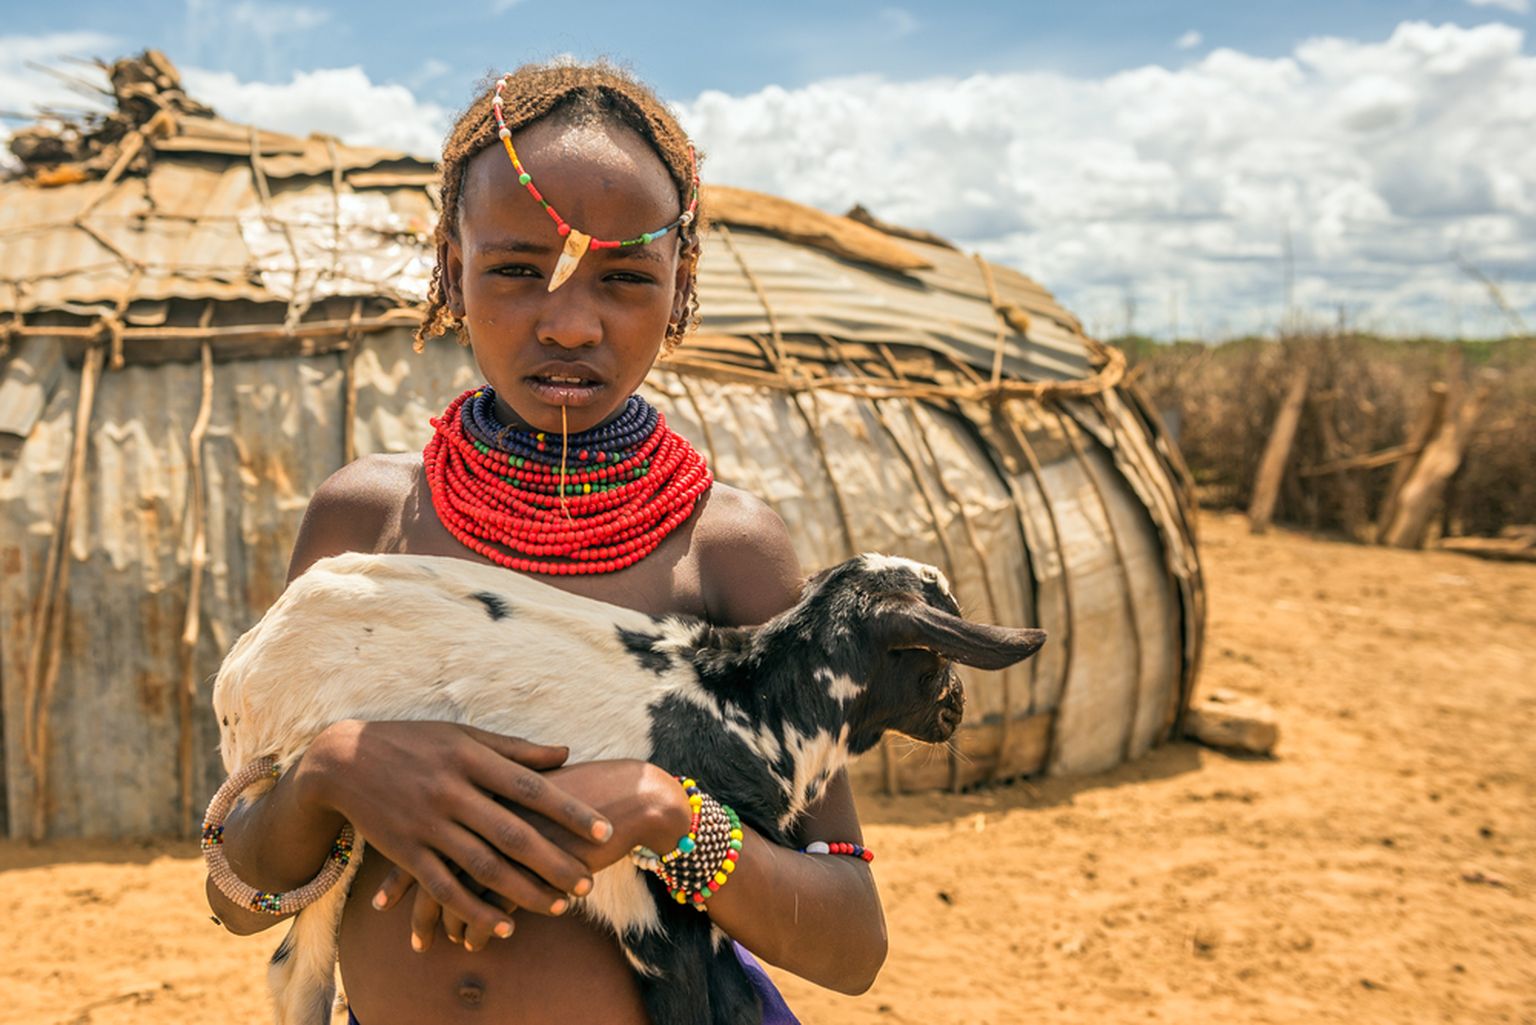 Etioopia tüdruk. Foto on loo juures illustratiivse tähendusega